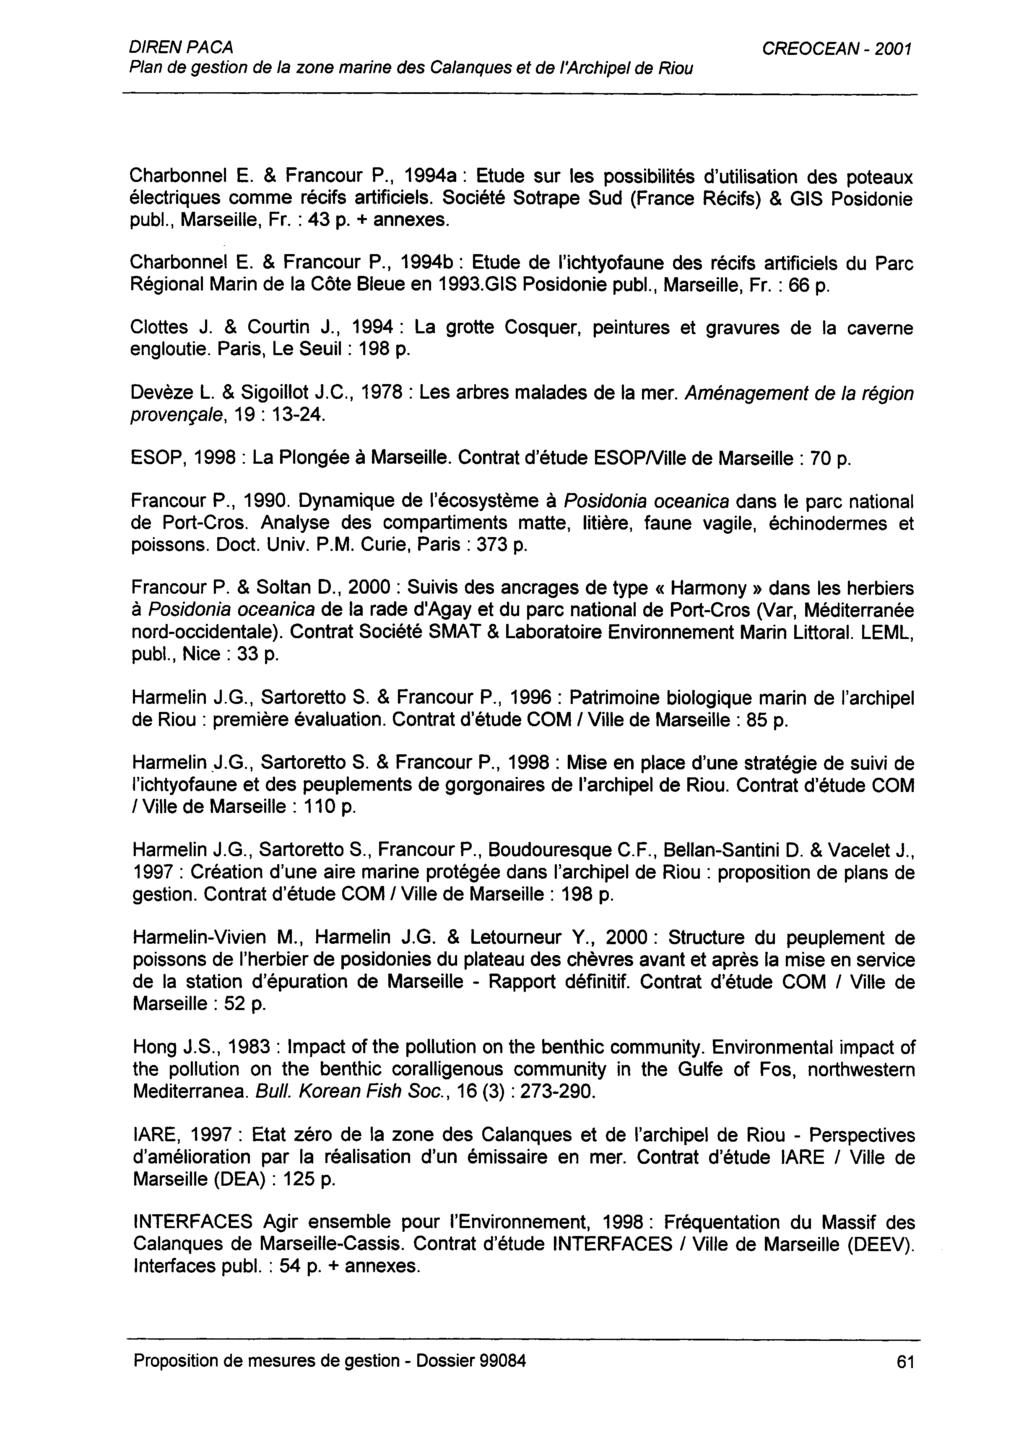 Charbonnel E. & Francour P., 1994a: Etude sur les possibilités d'utilisation des poteaux électriques comme récifs artificiels. Société Sotrape Sud (France Récifs) & GIS Posidonie publ., Marseille, Fr.